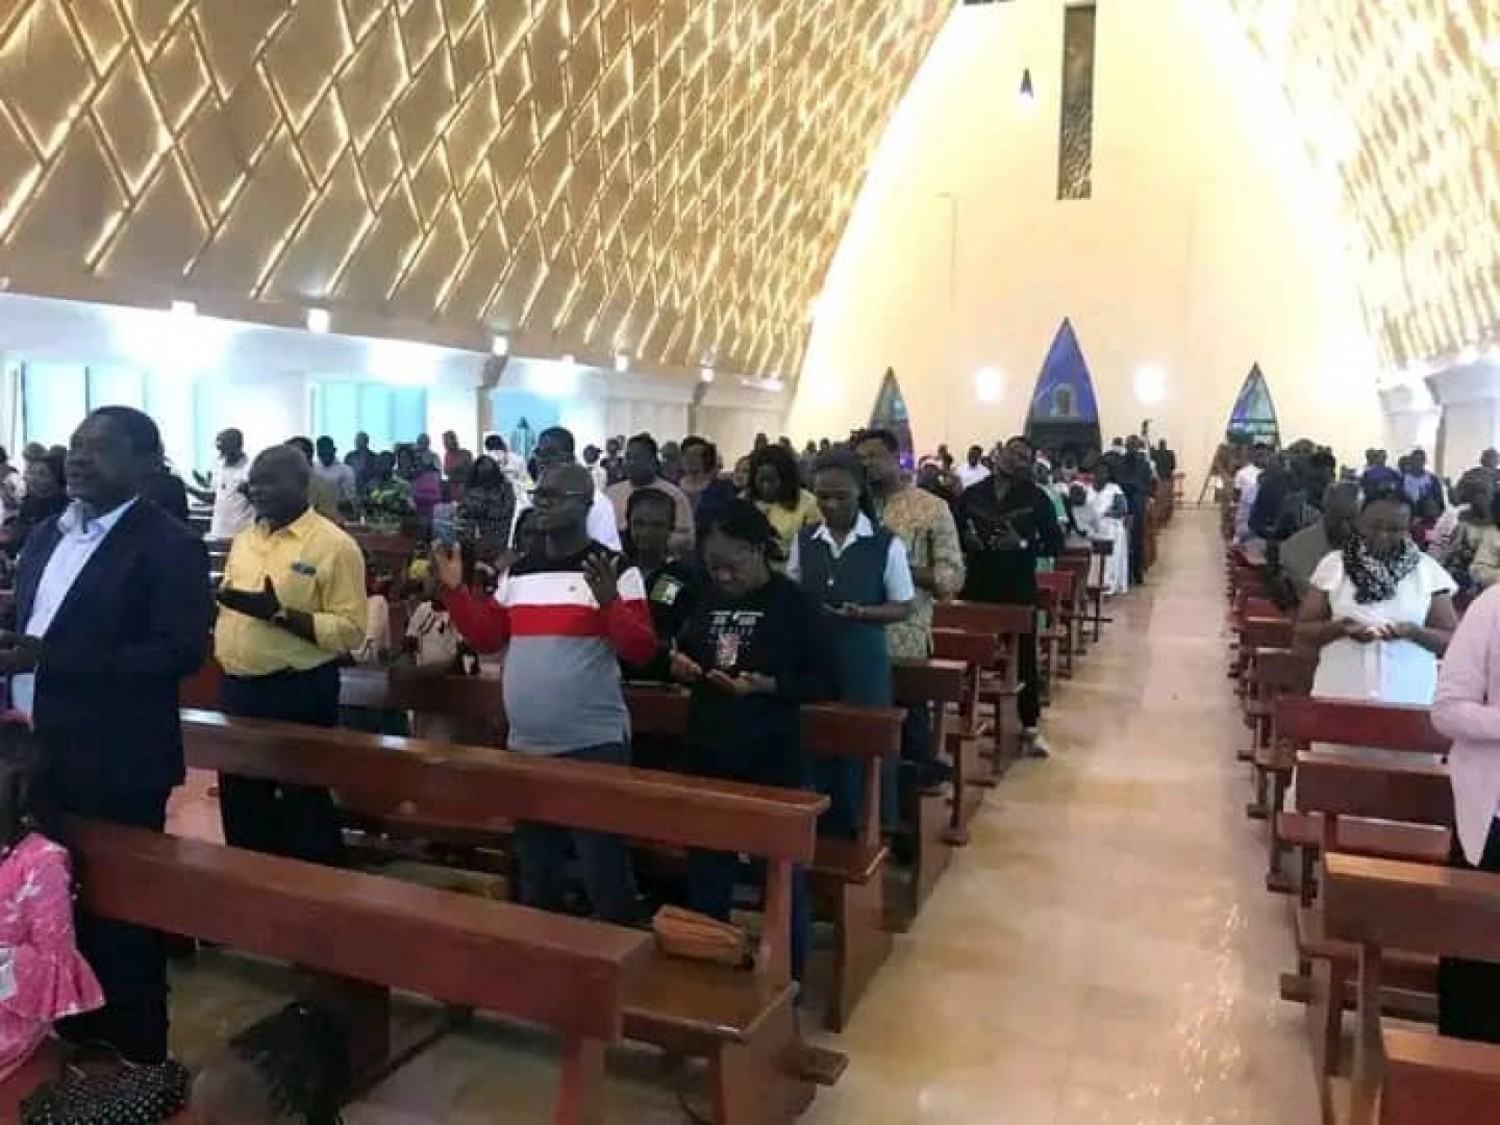 Côte d'Ivoire : Fête de la nativité, les chrétiens exhortés à saisir les grâces liées au mystère de Noël